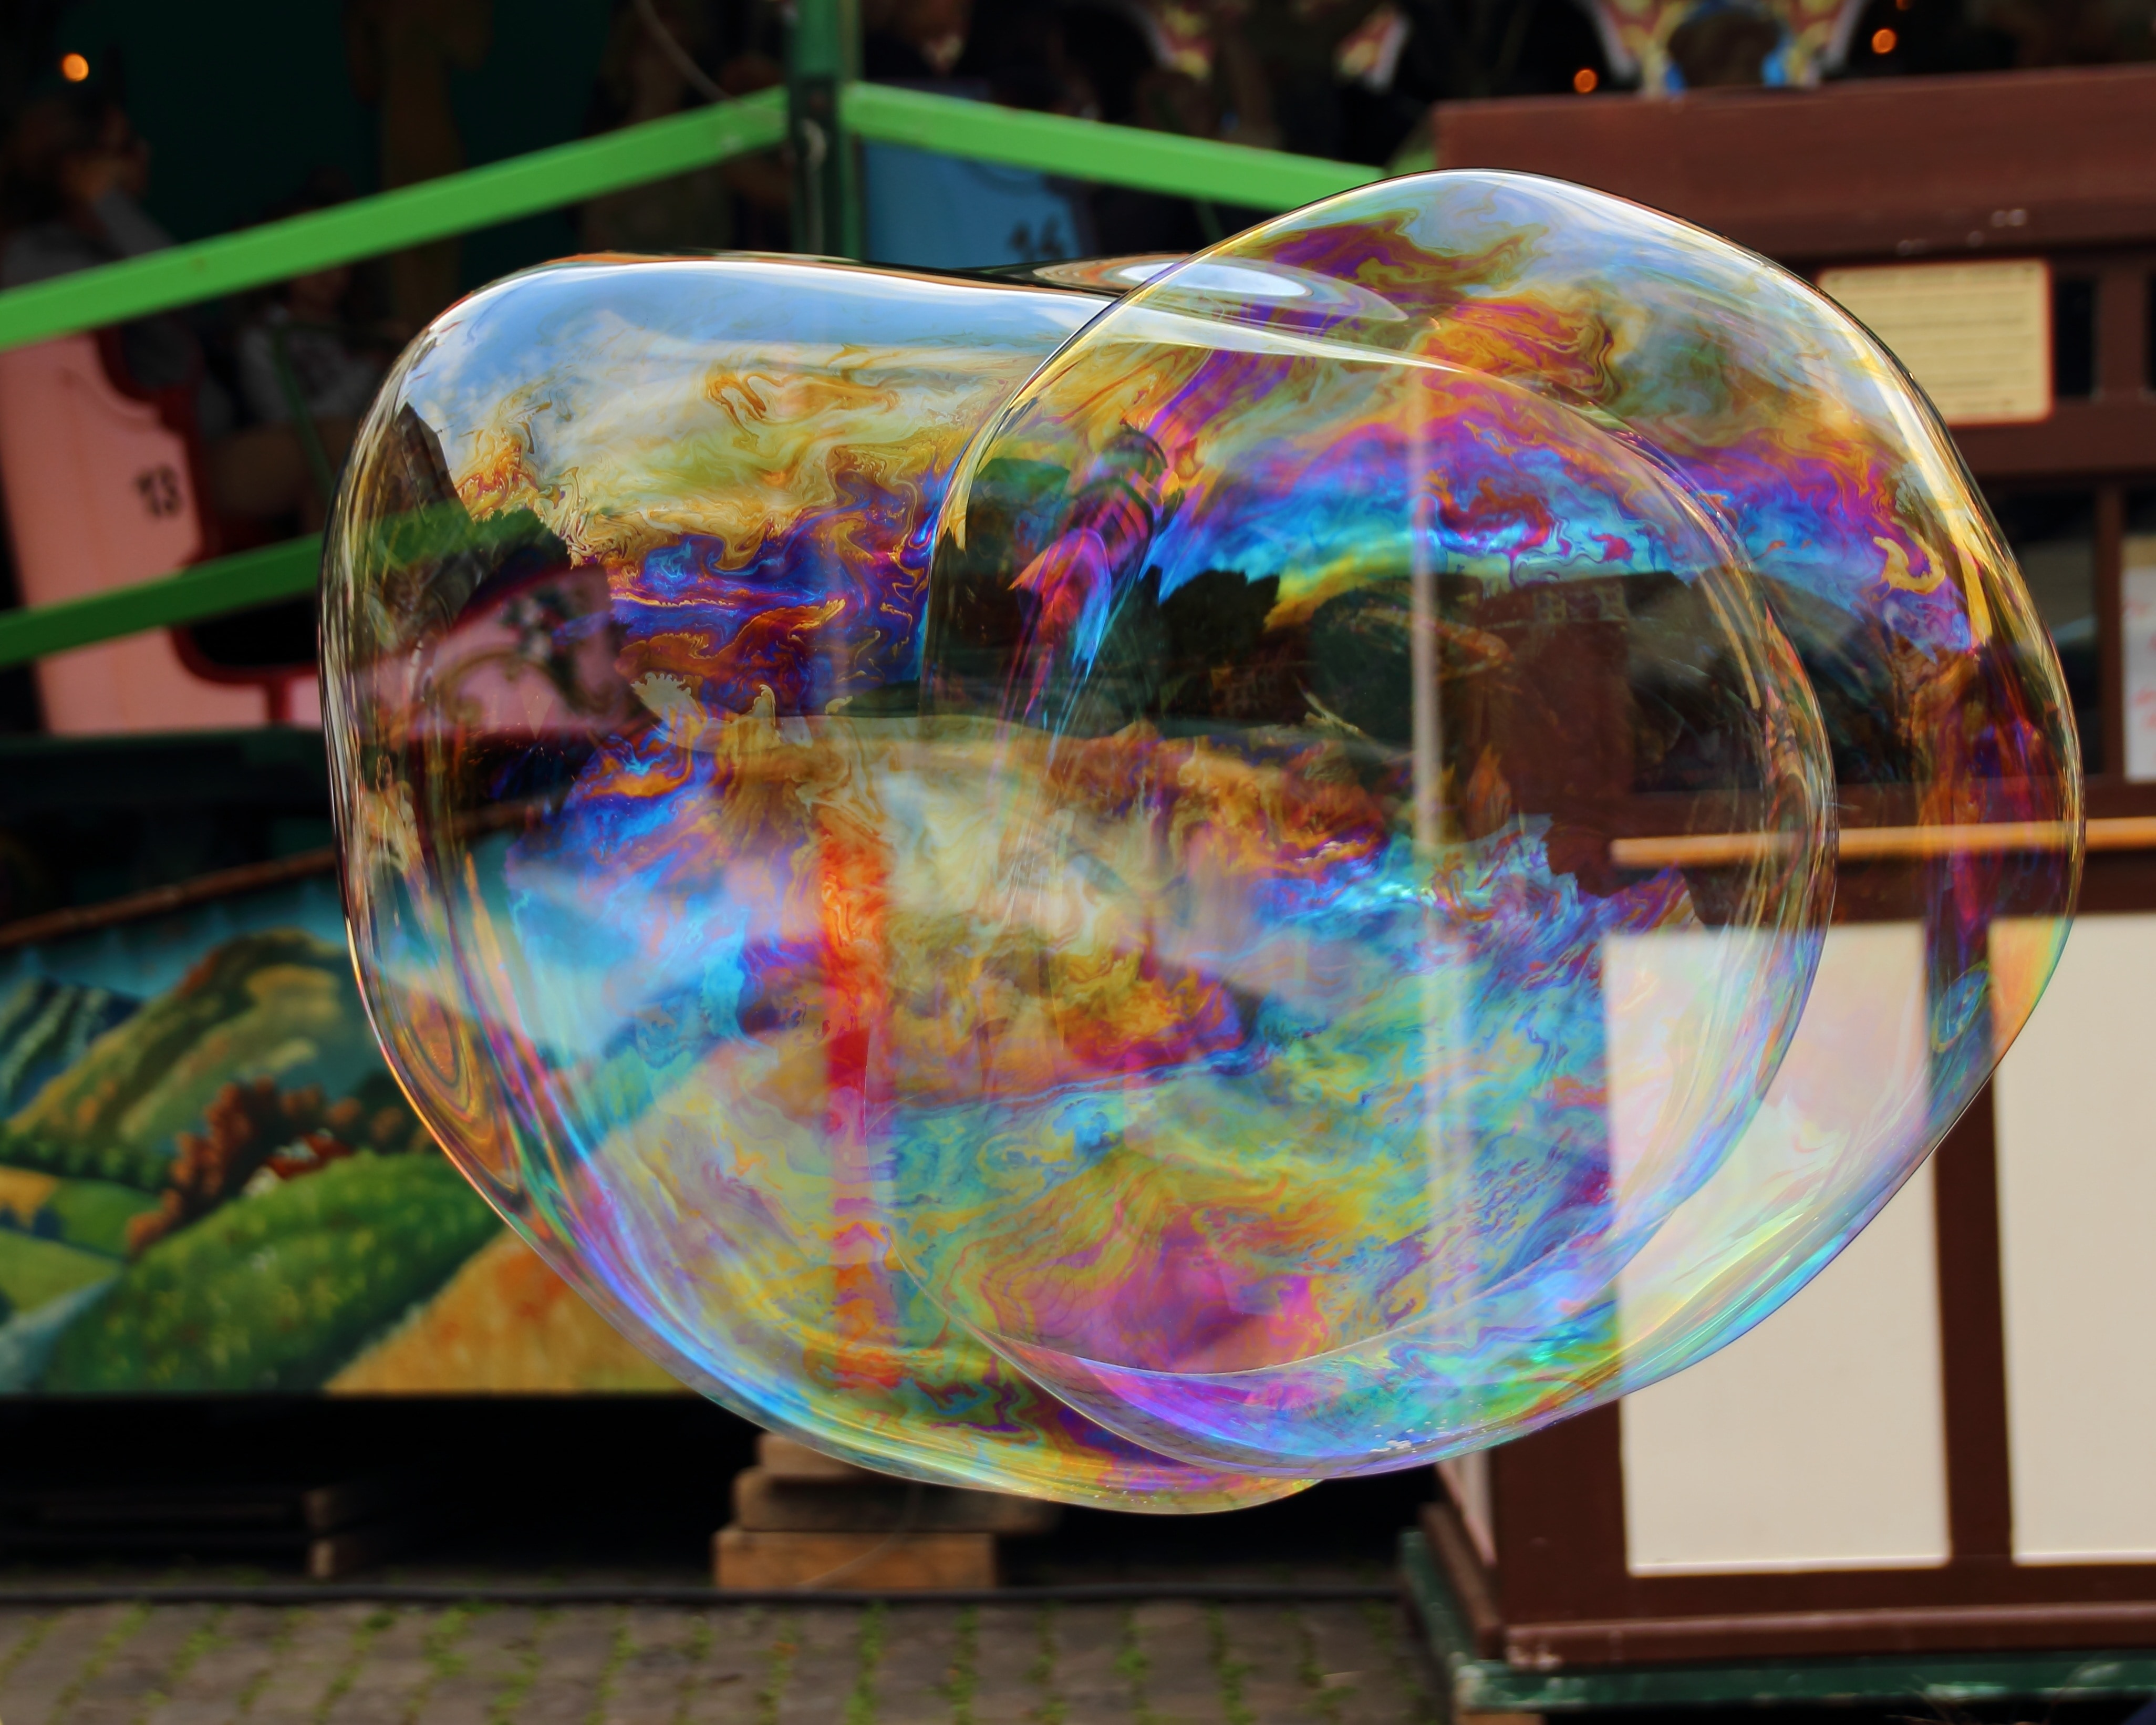 translucent bubble